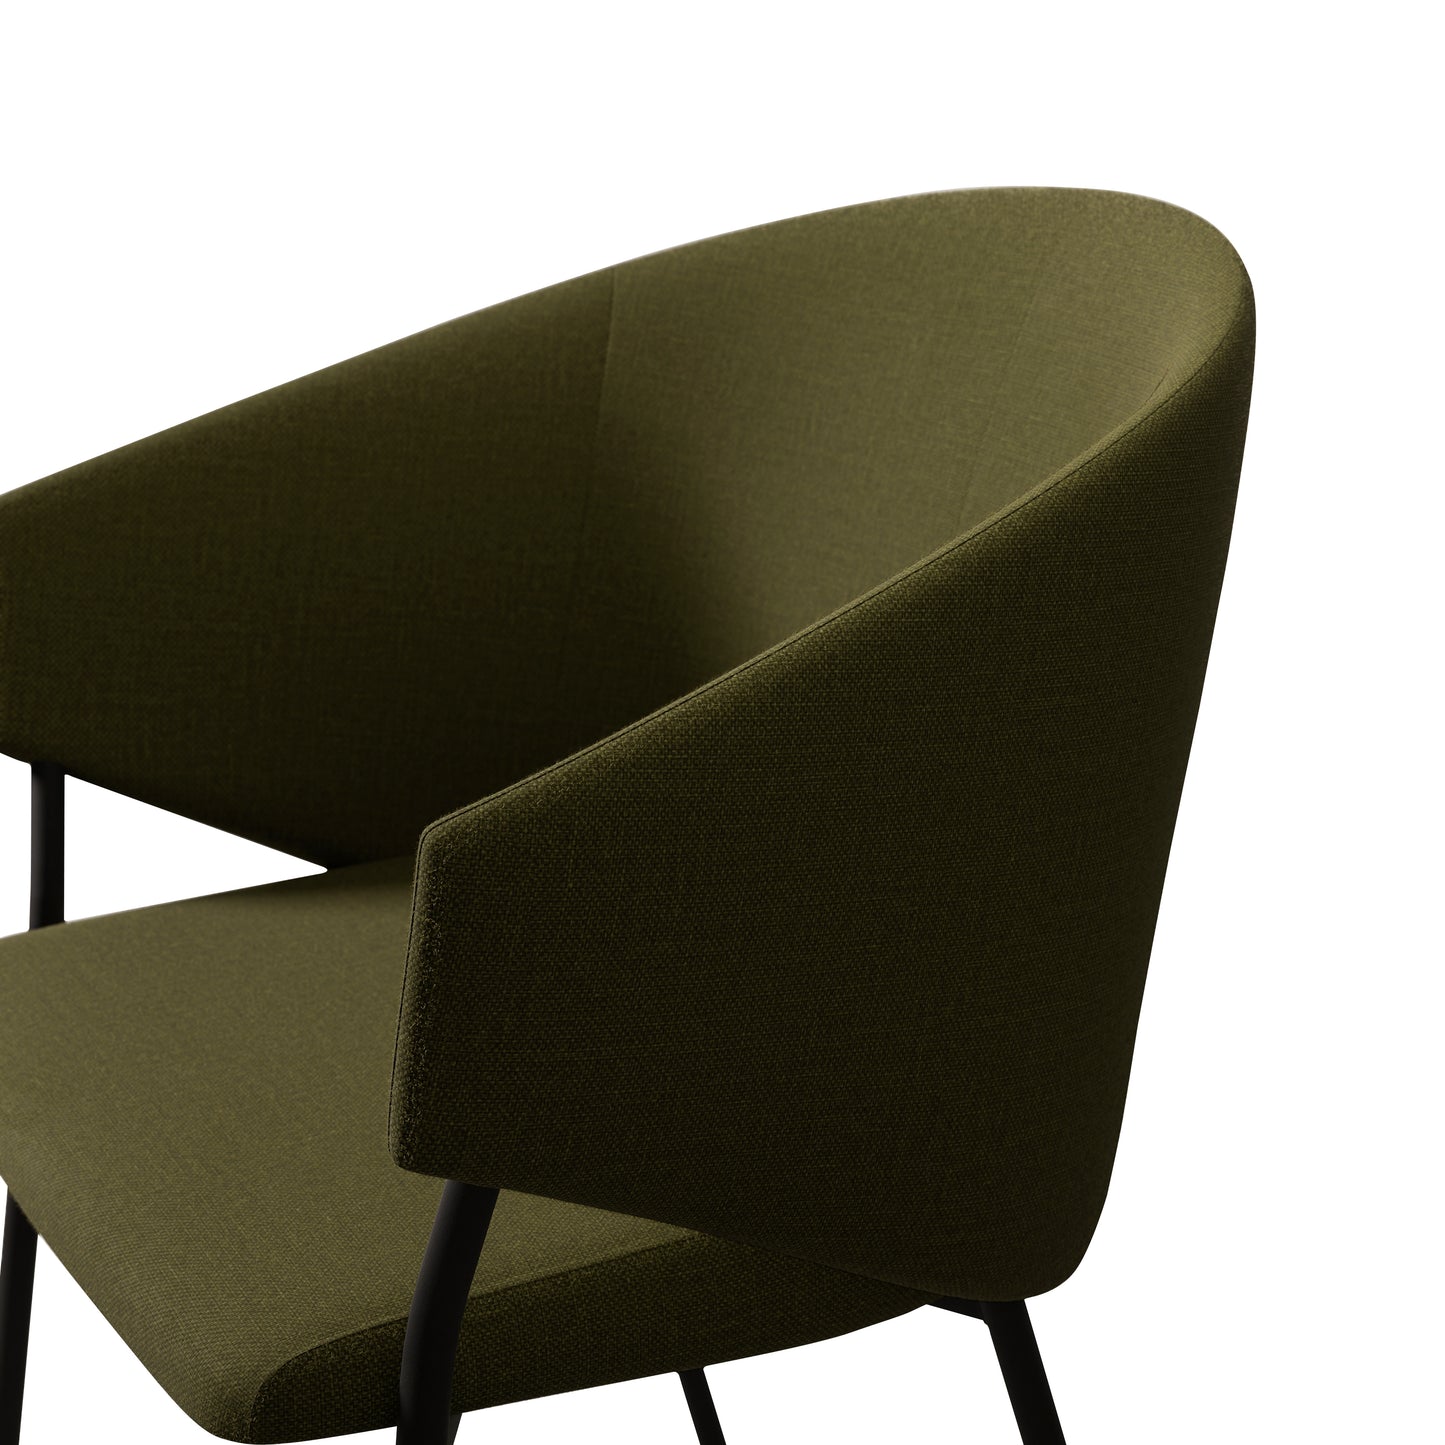 Chair Throne - 36 - Green